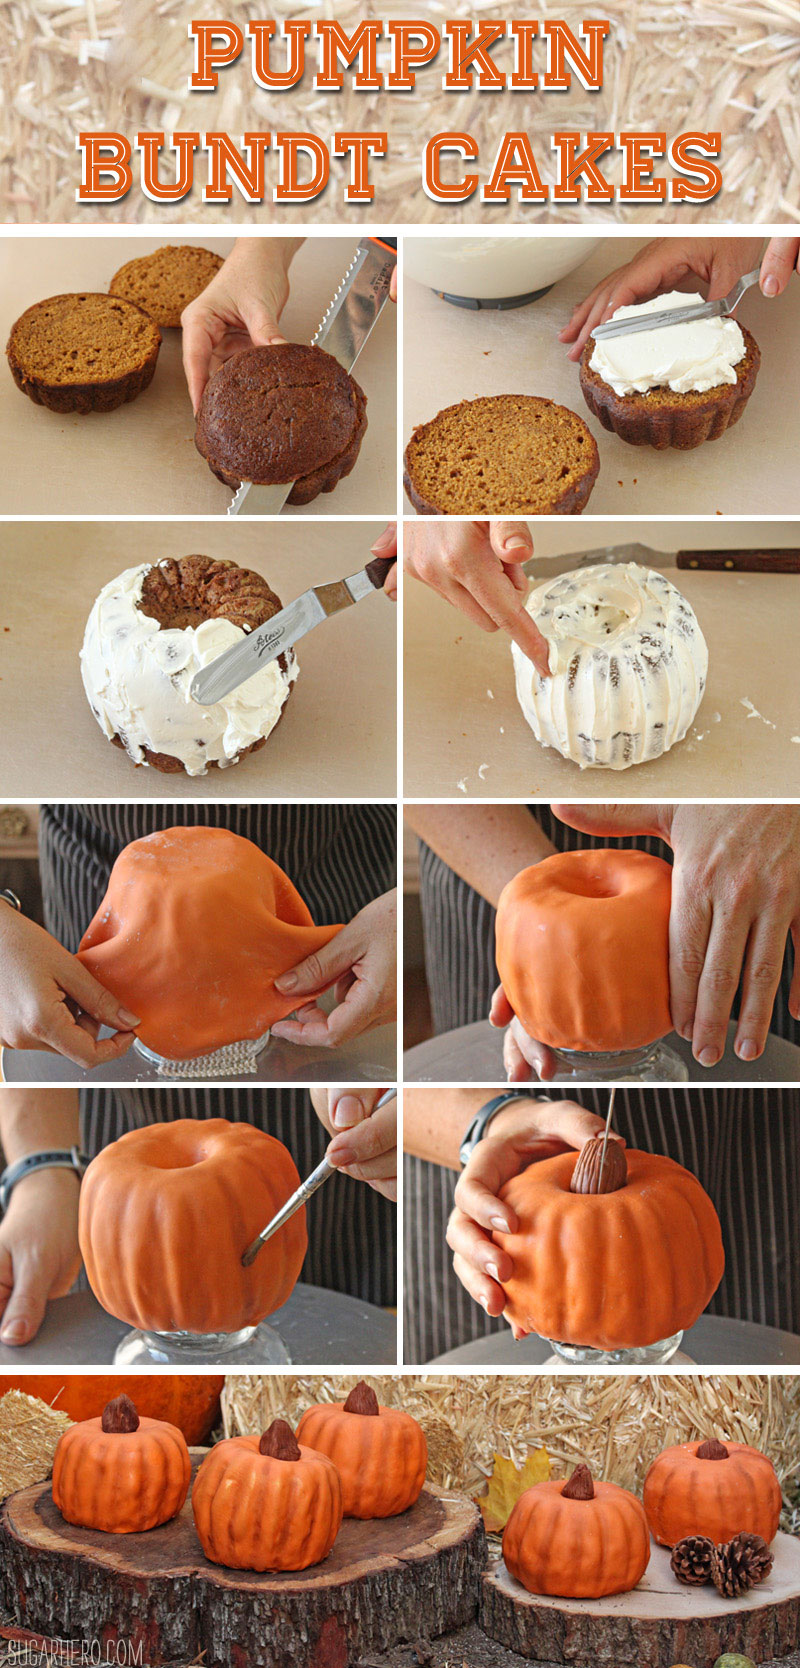 How to Make Pumpkin Bundt Cakes | From SugarHero.com